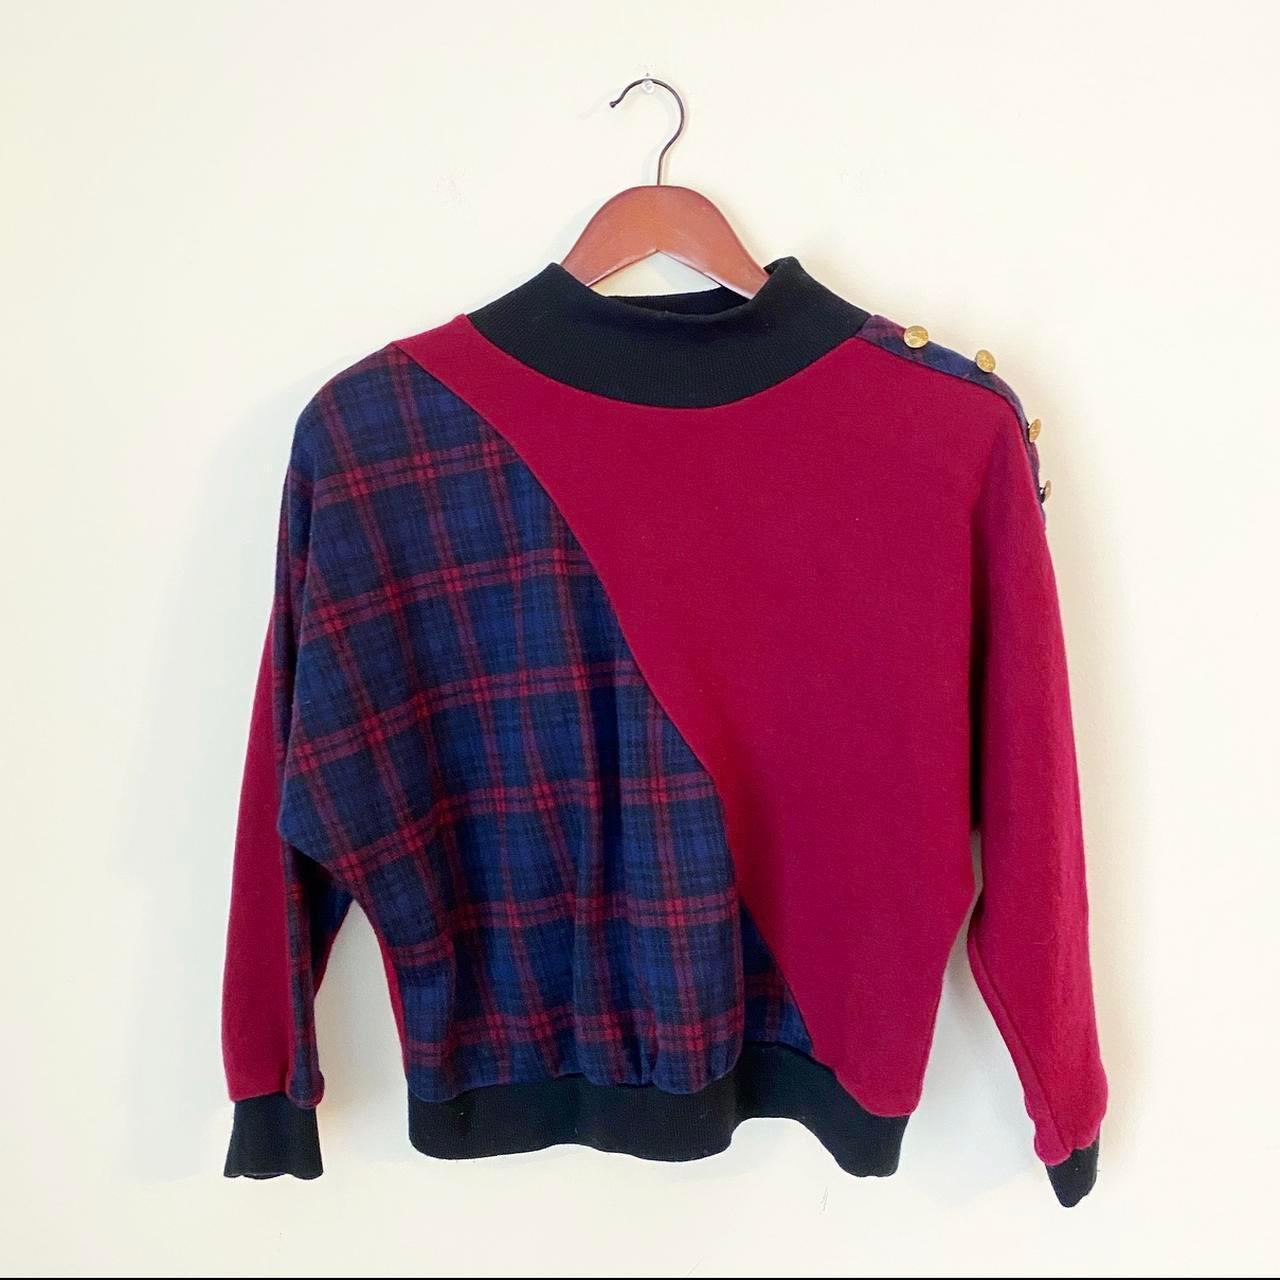 Product Image 2 - Vintage 80s Mockneck Pullover Sweater.